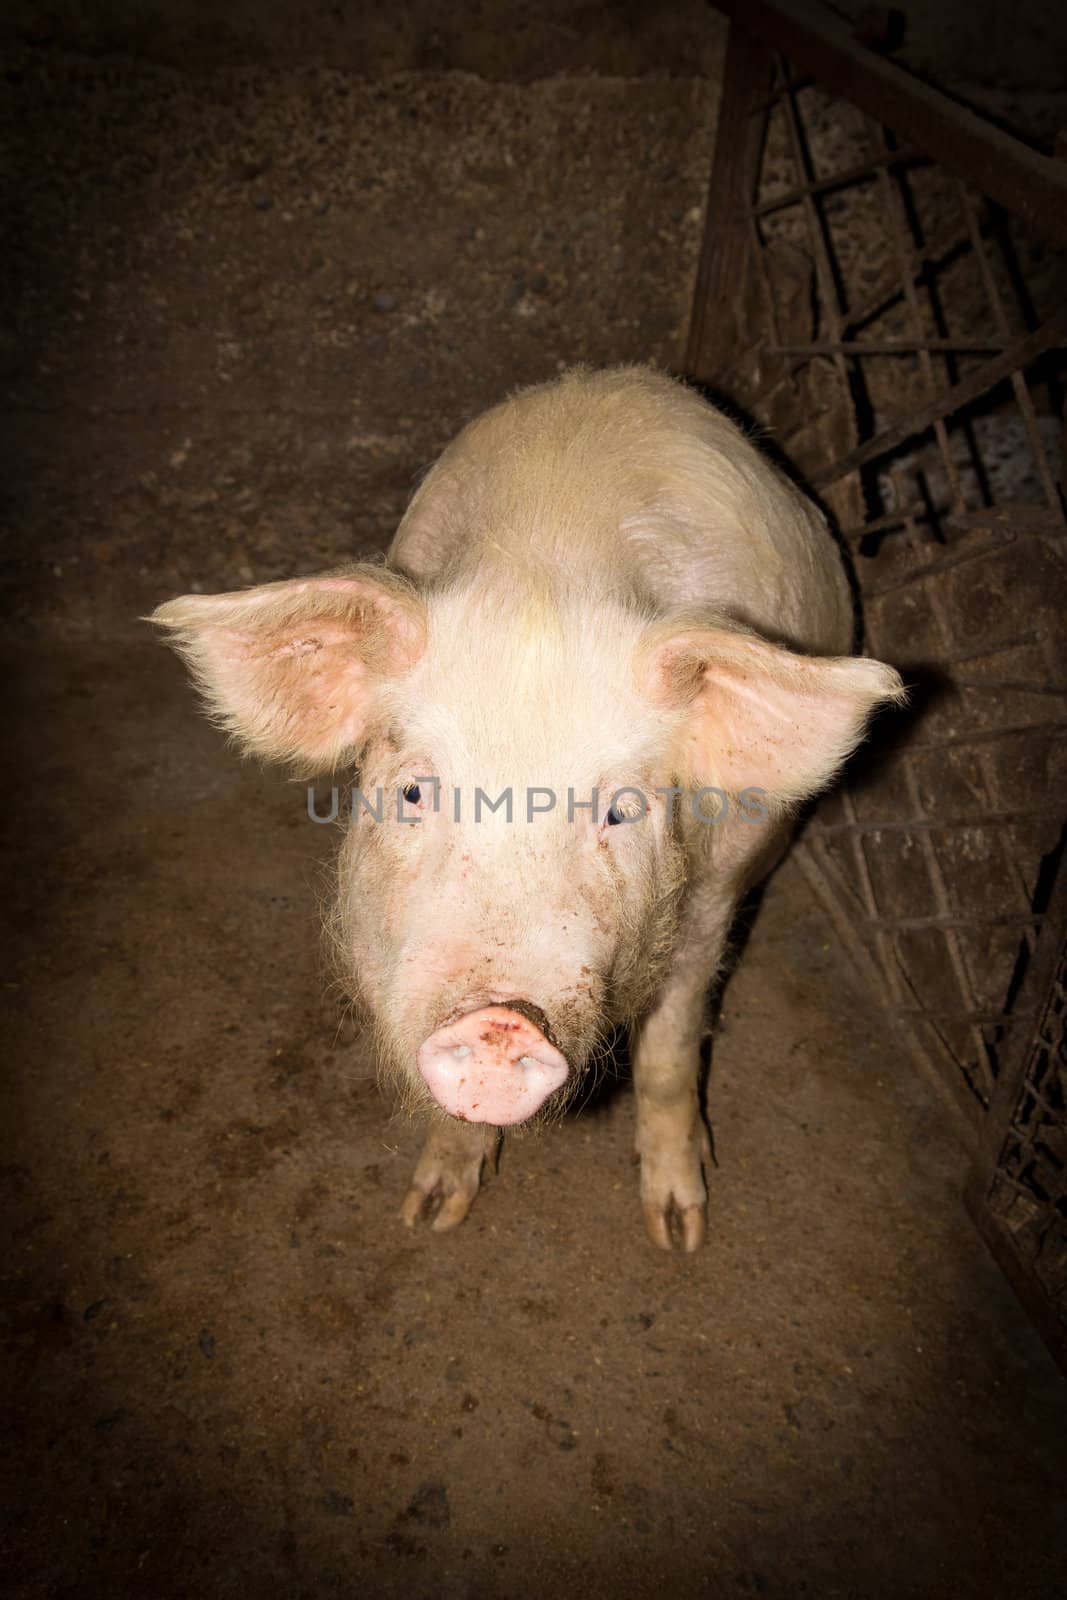 Pig on a farm